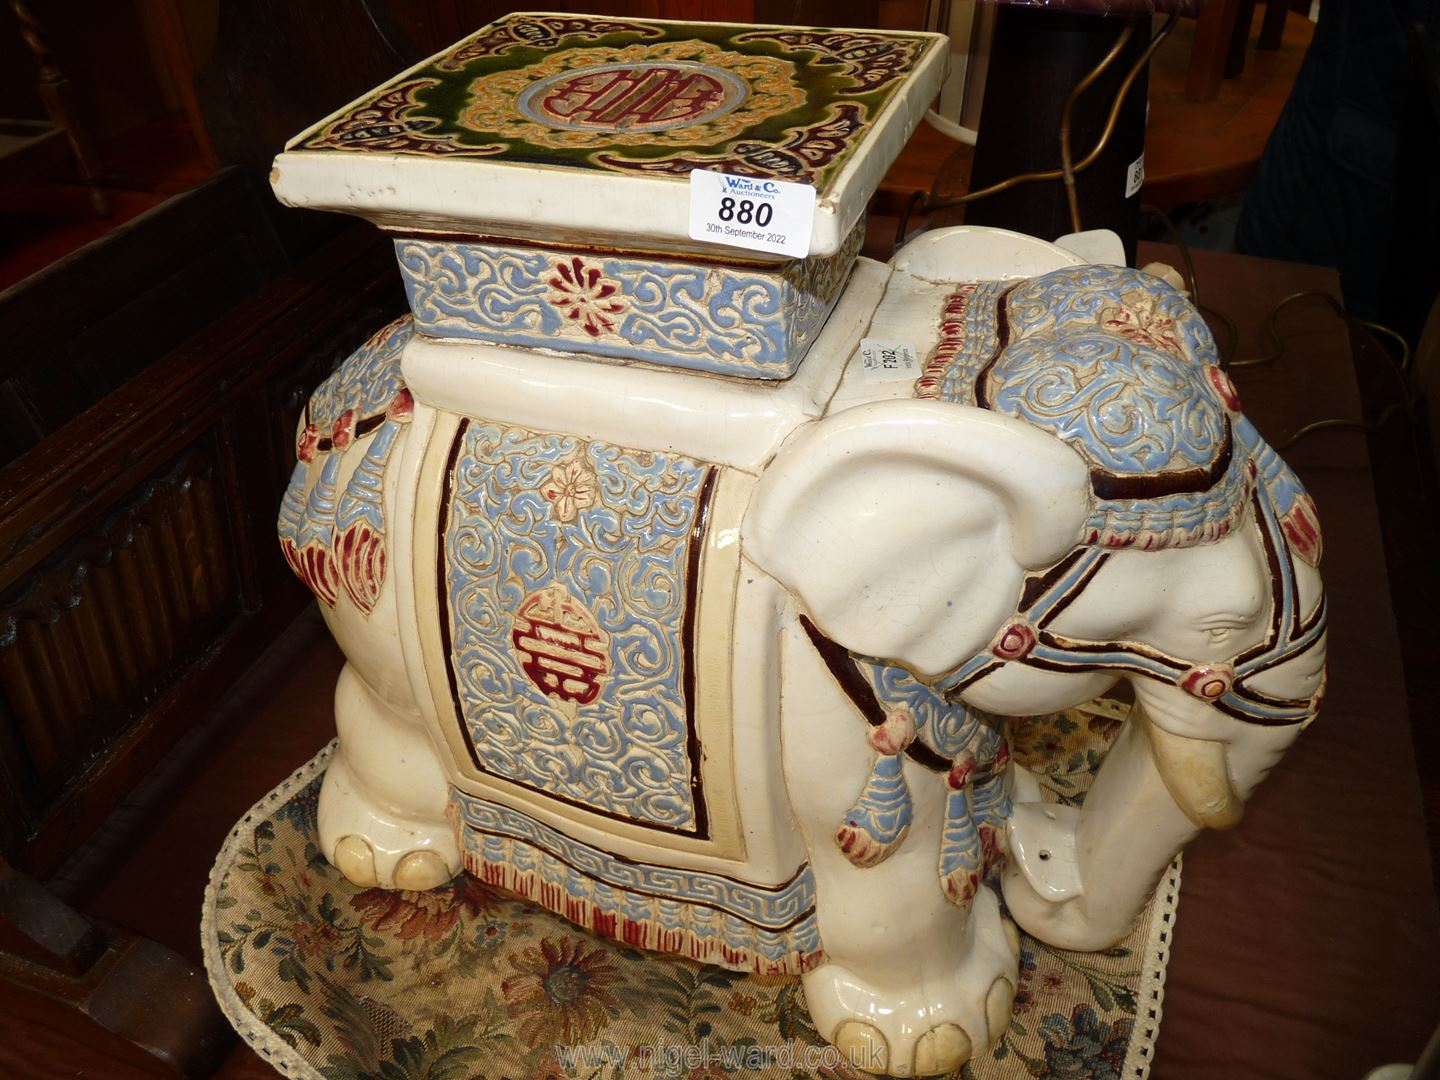 A large china elephant seat.